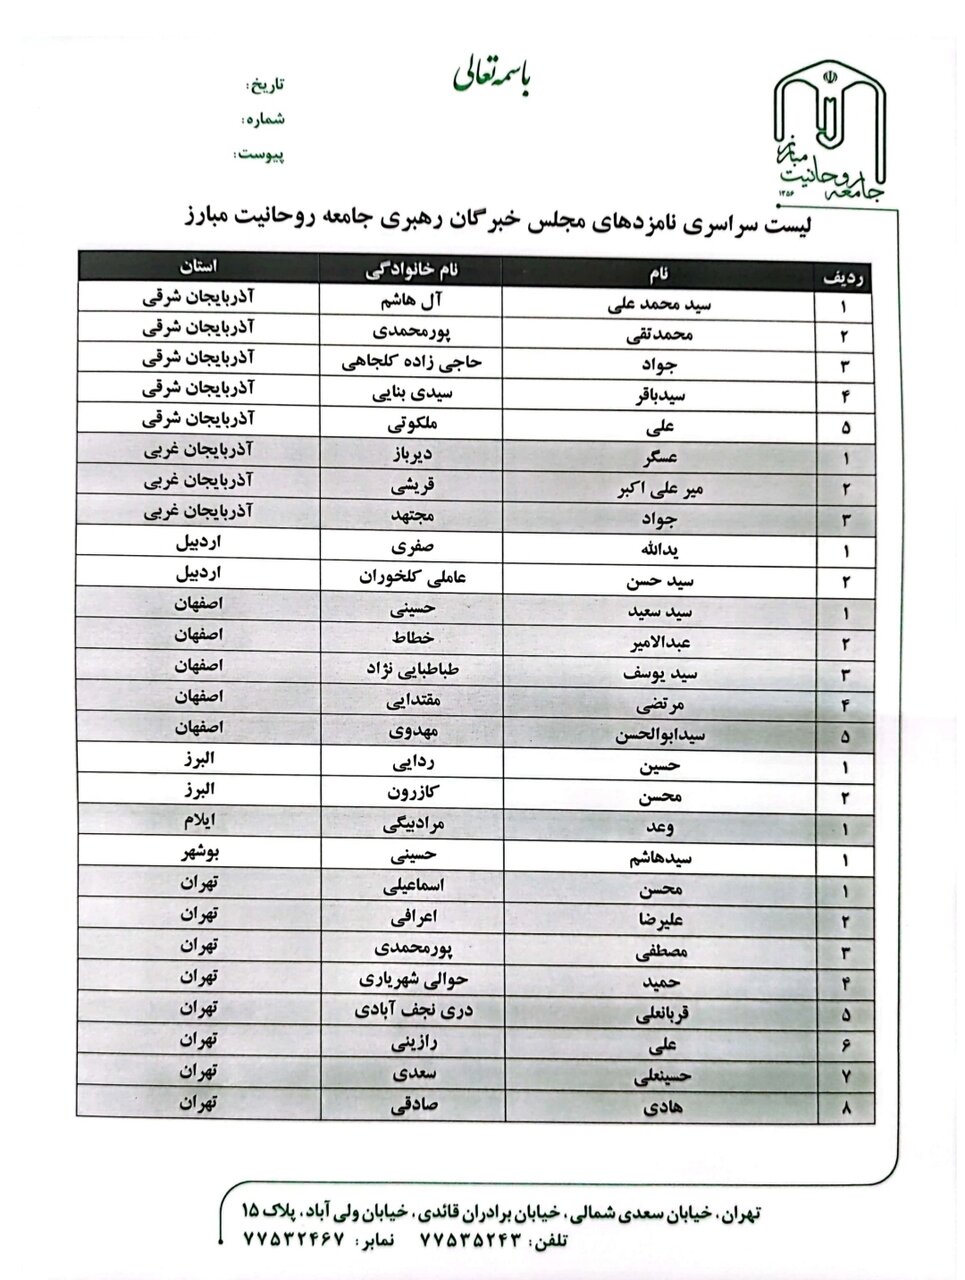 لیست نامزدهای جامعه روحانیت مبارز در انتخابات مجلس خبرگان اعلام شد +اسامی